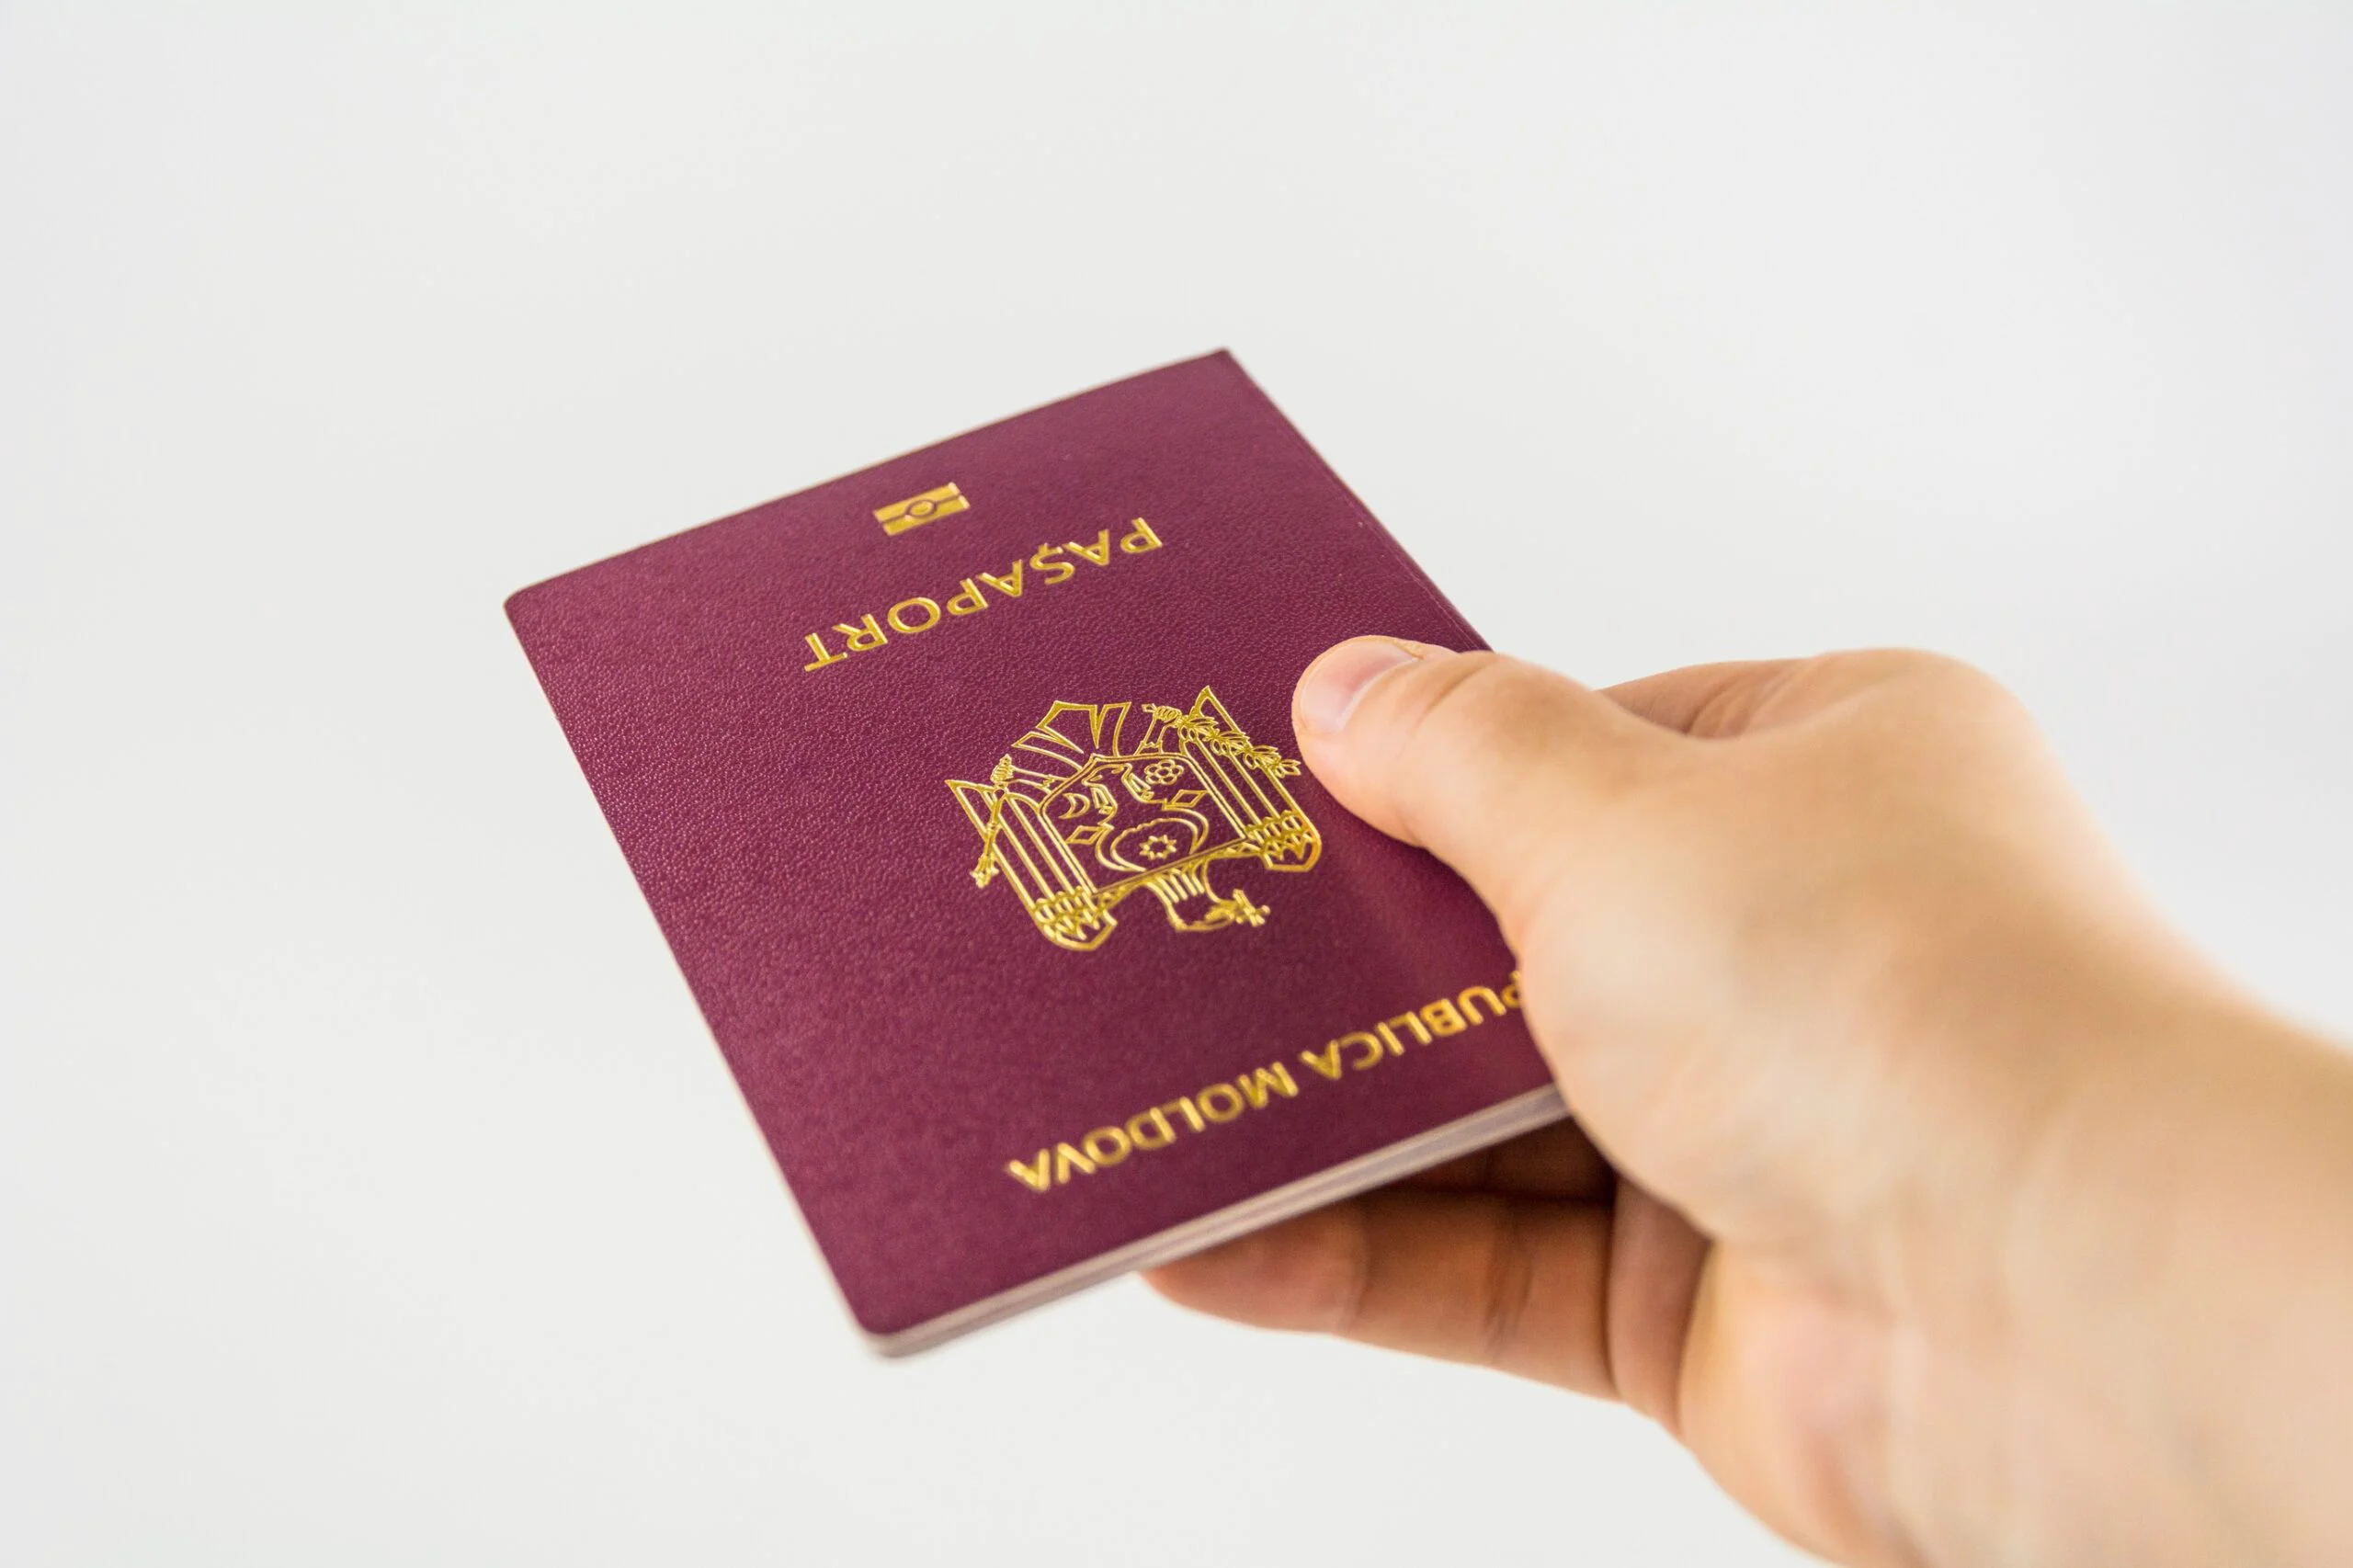 Pașaportul simplu electronic va putea fi trimis la orice adresă din România, prin curier